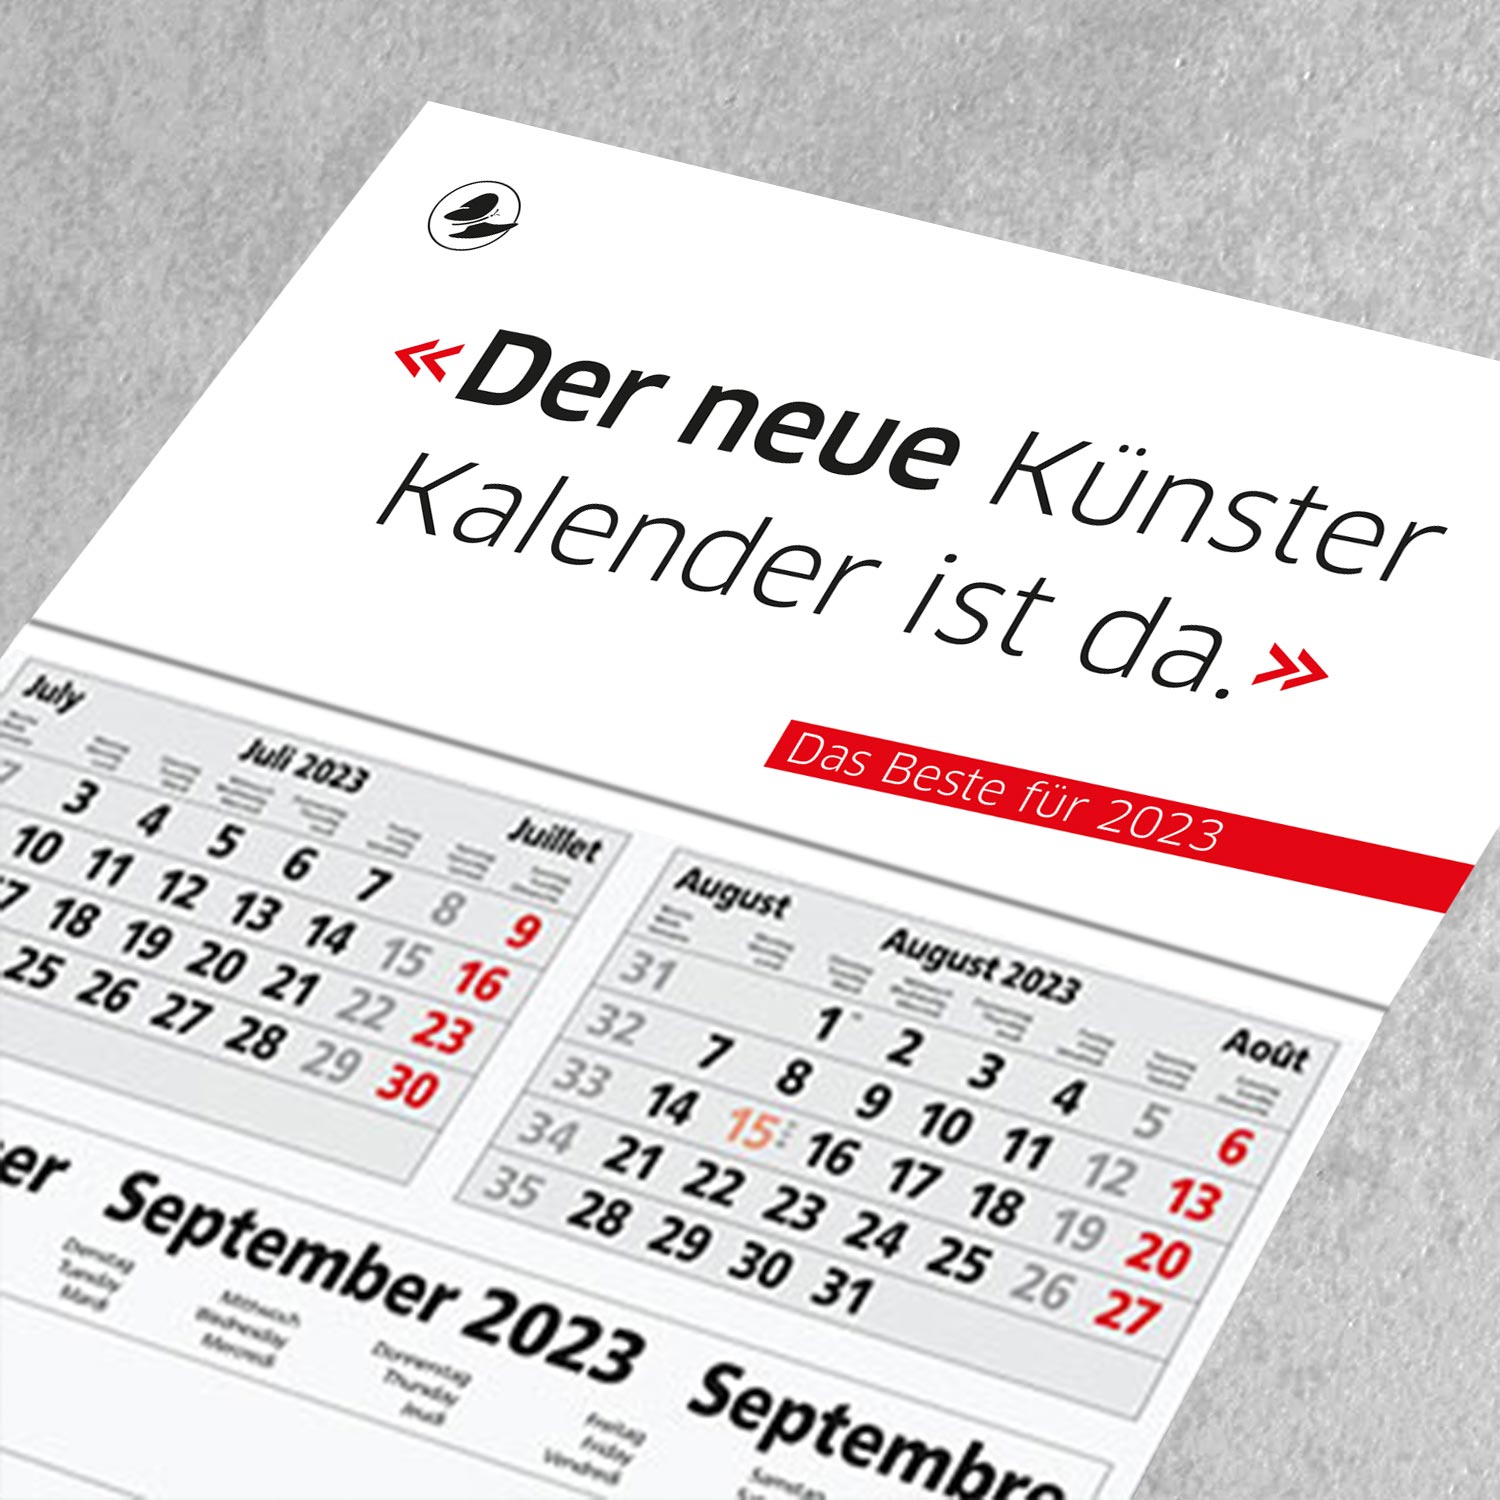 Künster-Druck GmbH Andernach Mittelrhein Neuwied Koblenz Organisation Kalender Wandplaner 2020 2021 2022